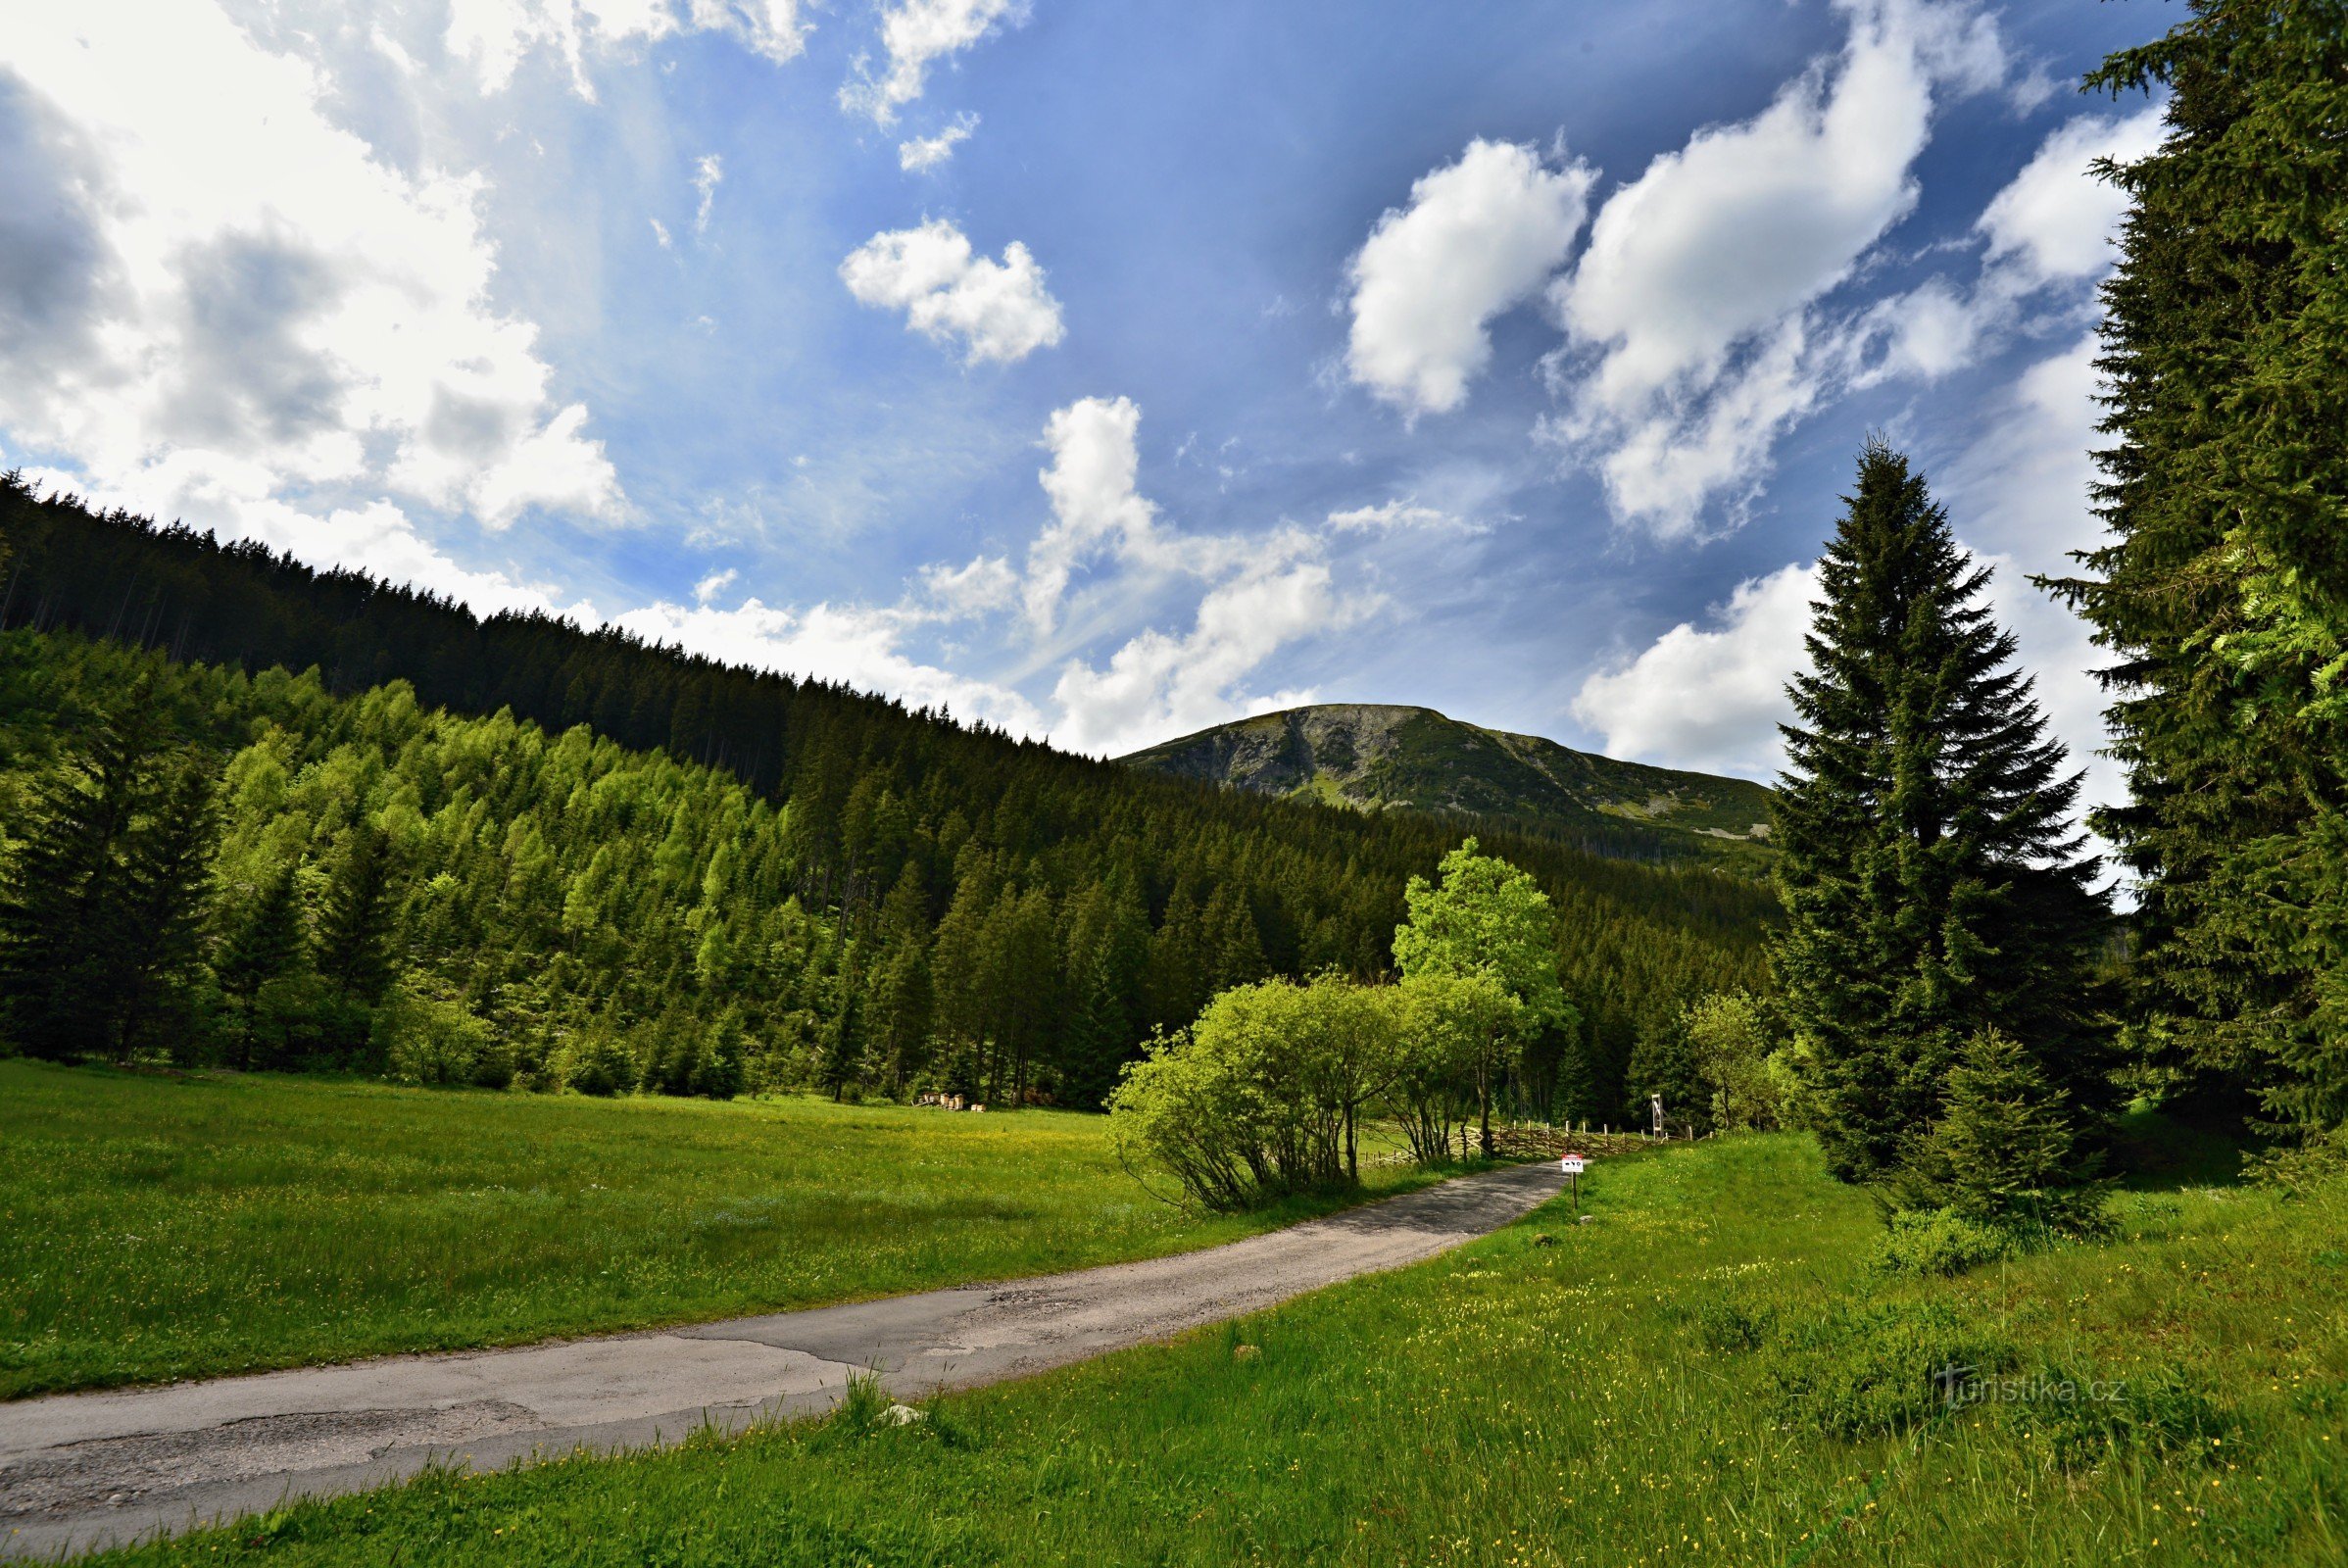 Dãy núi khổng lồ: Studniční hora từ Bouda ở Obří dole